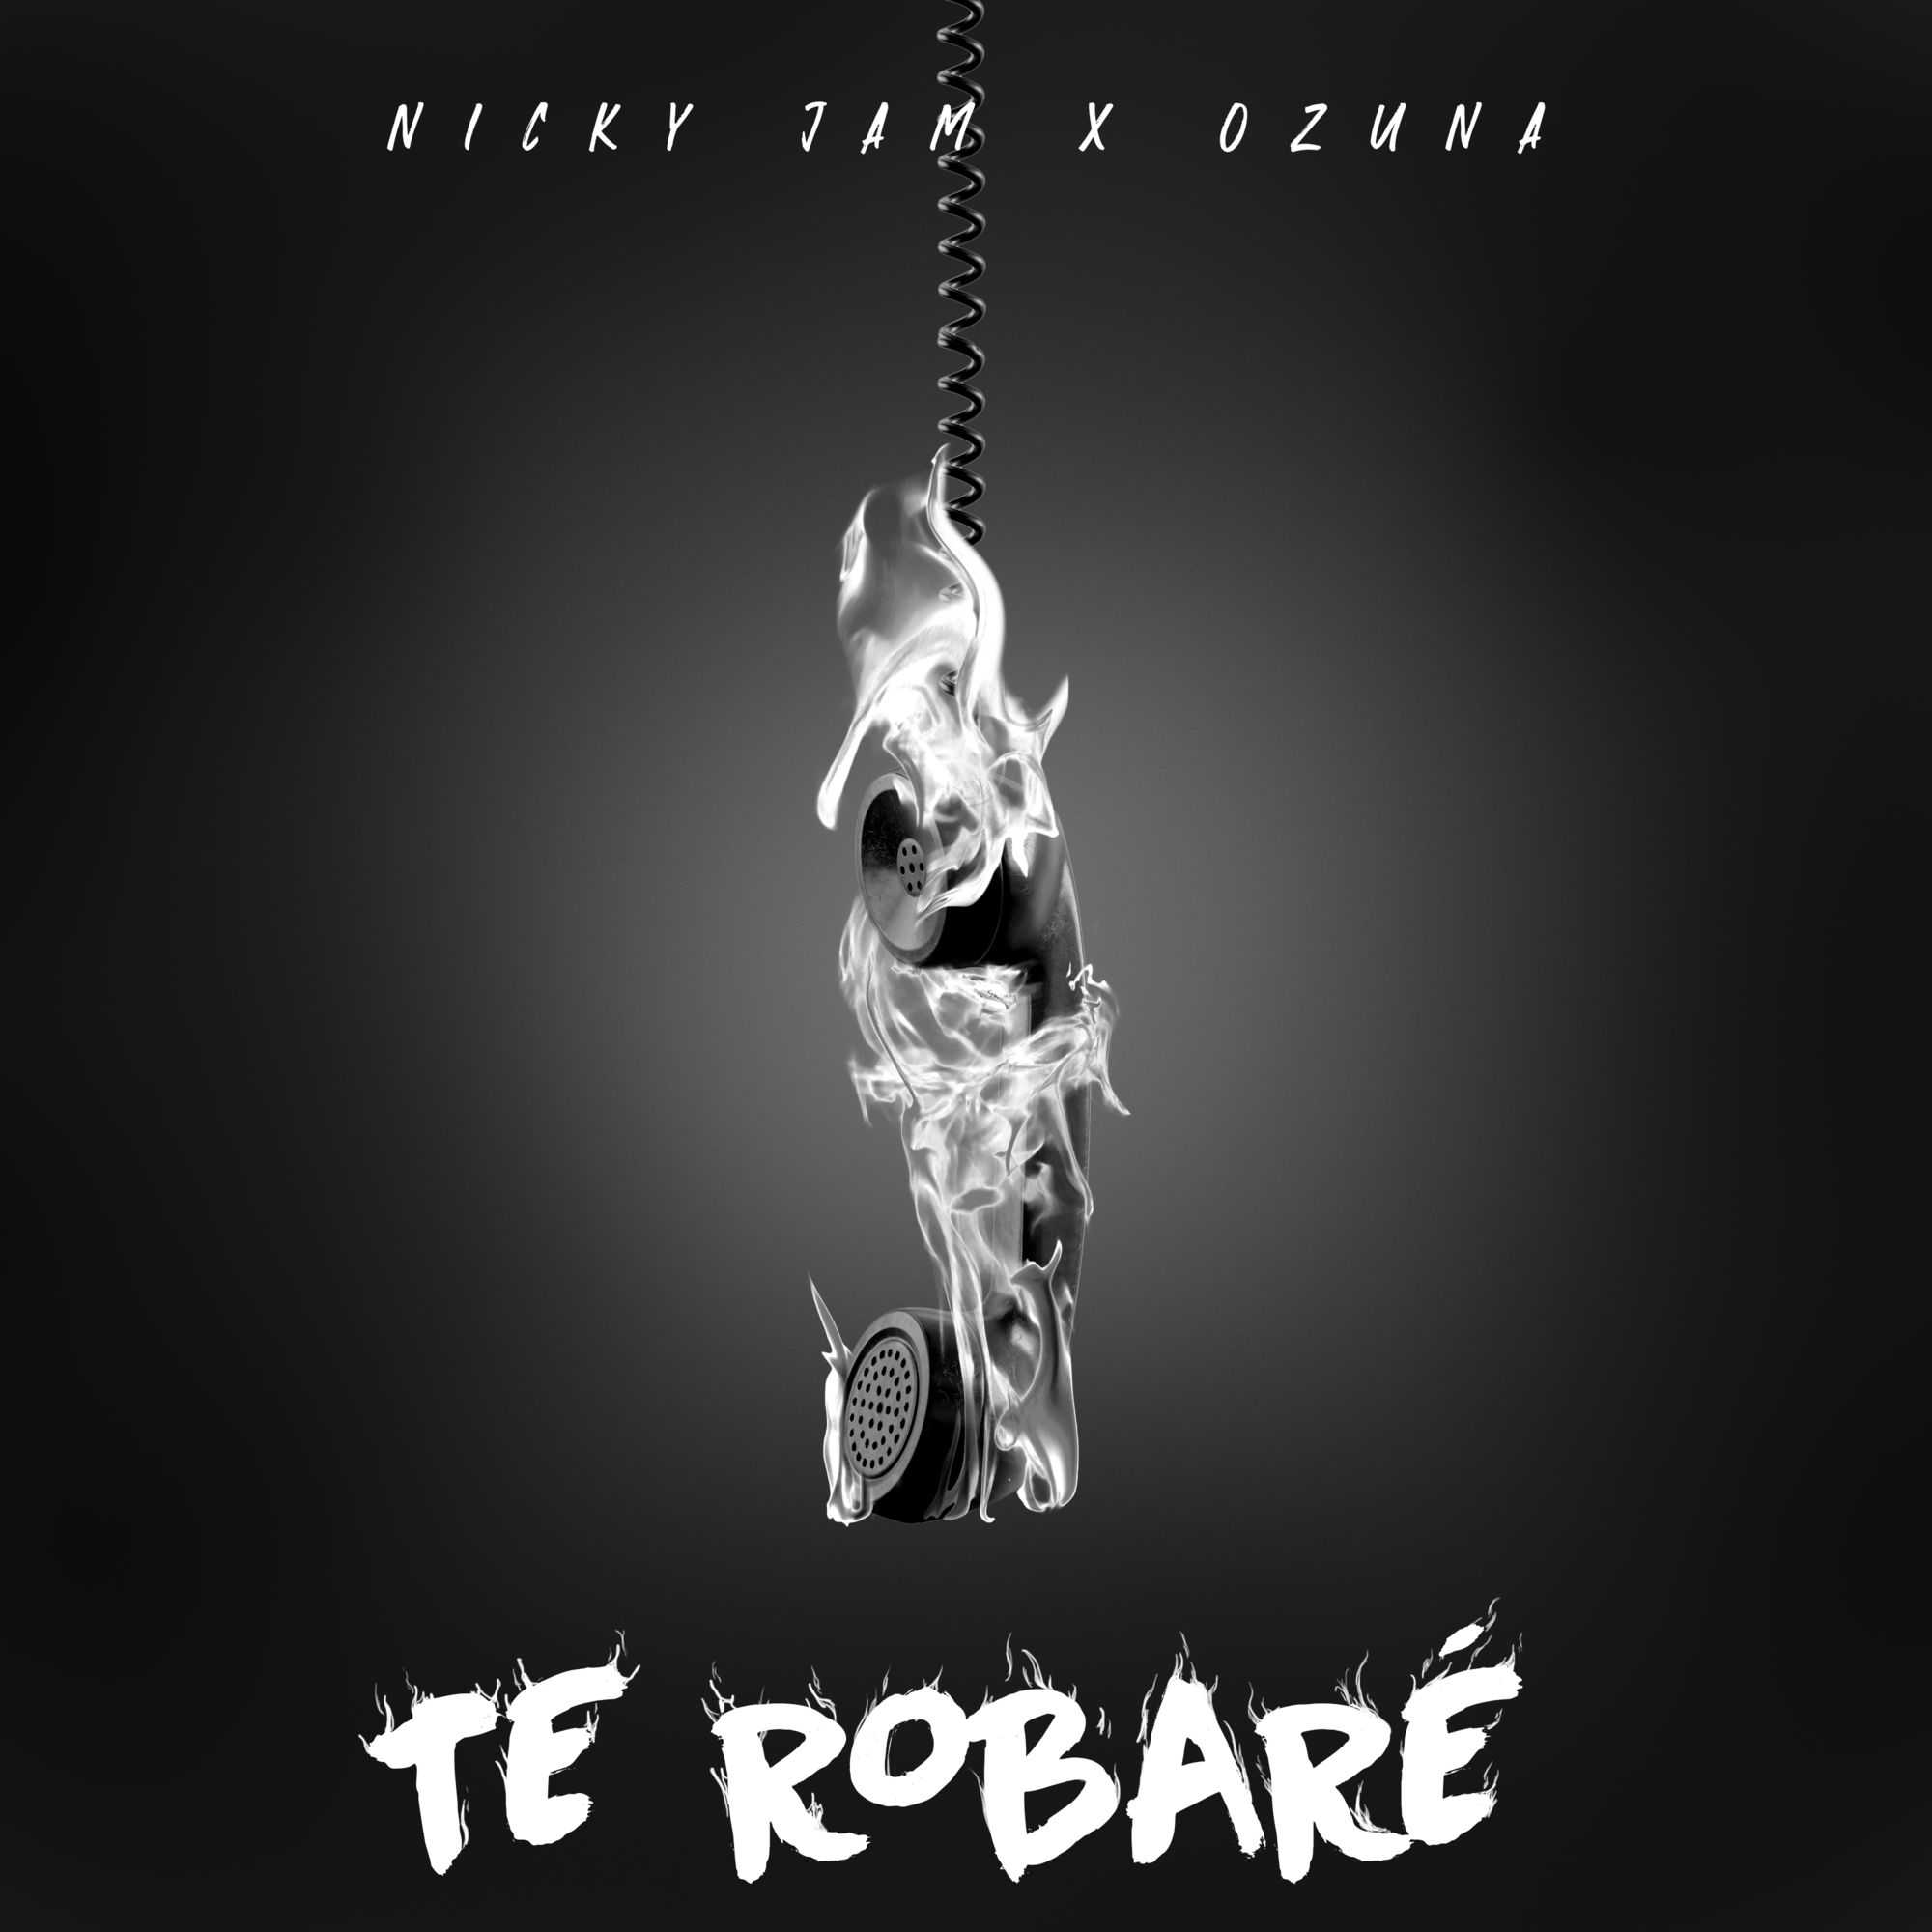 Nicky Jam & Ozuna - Te Robare